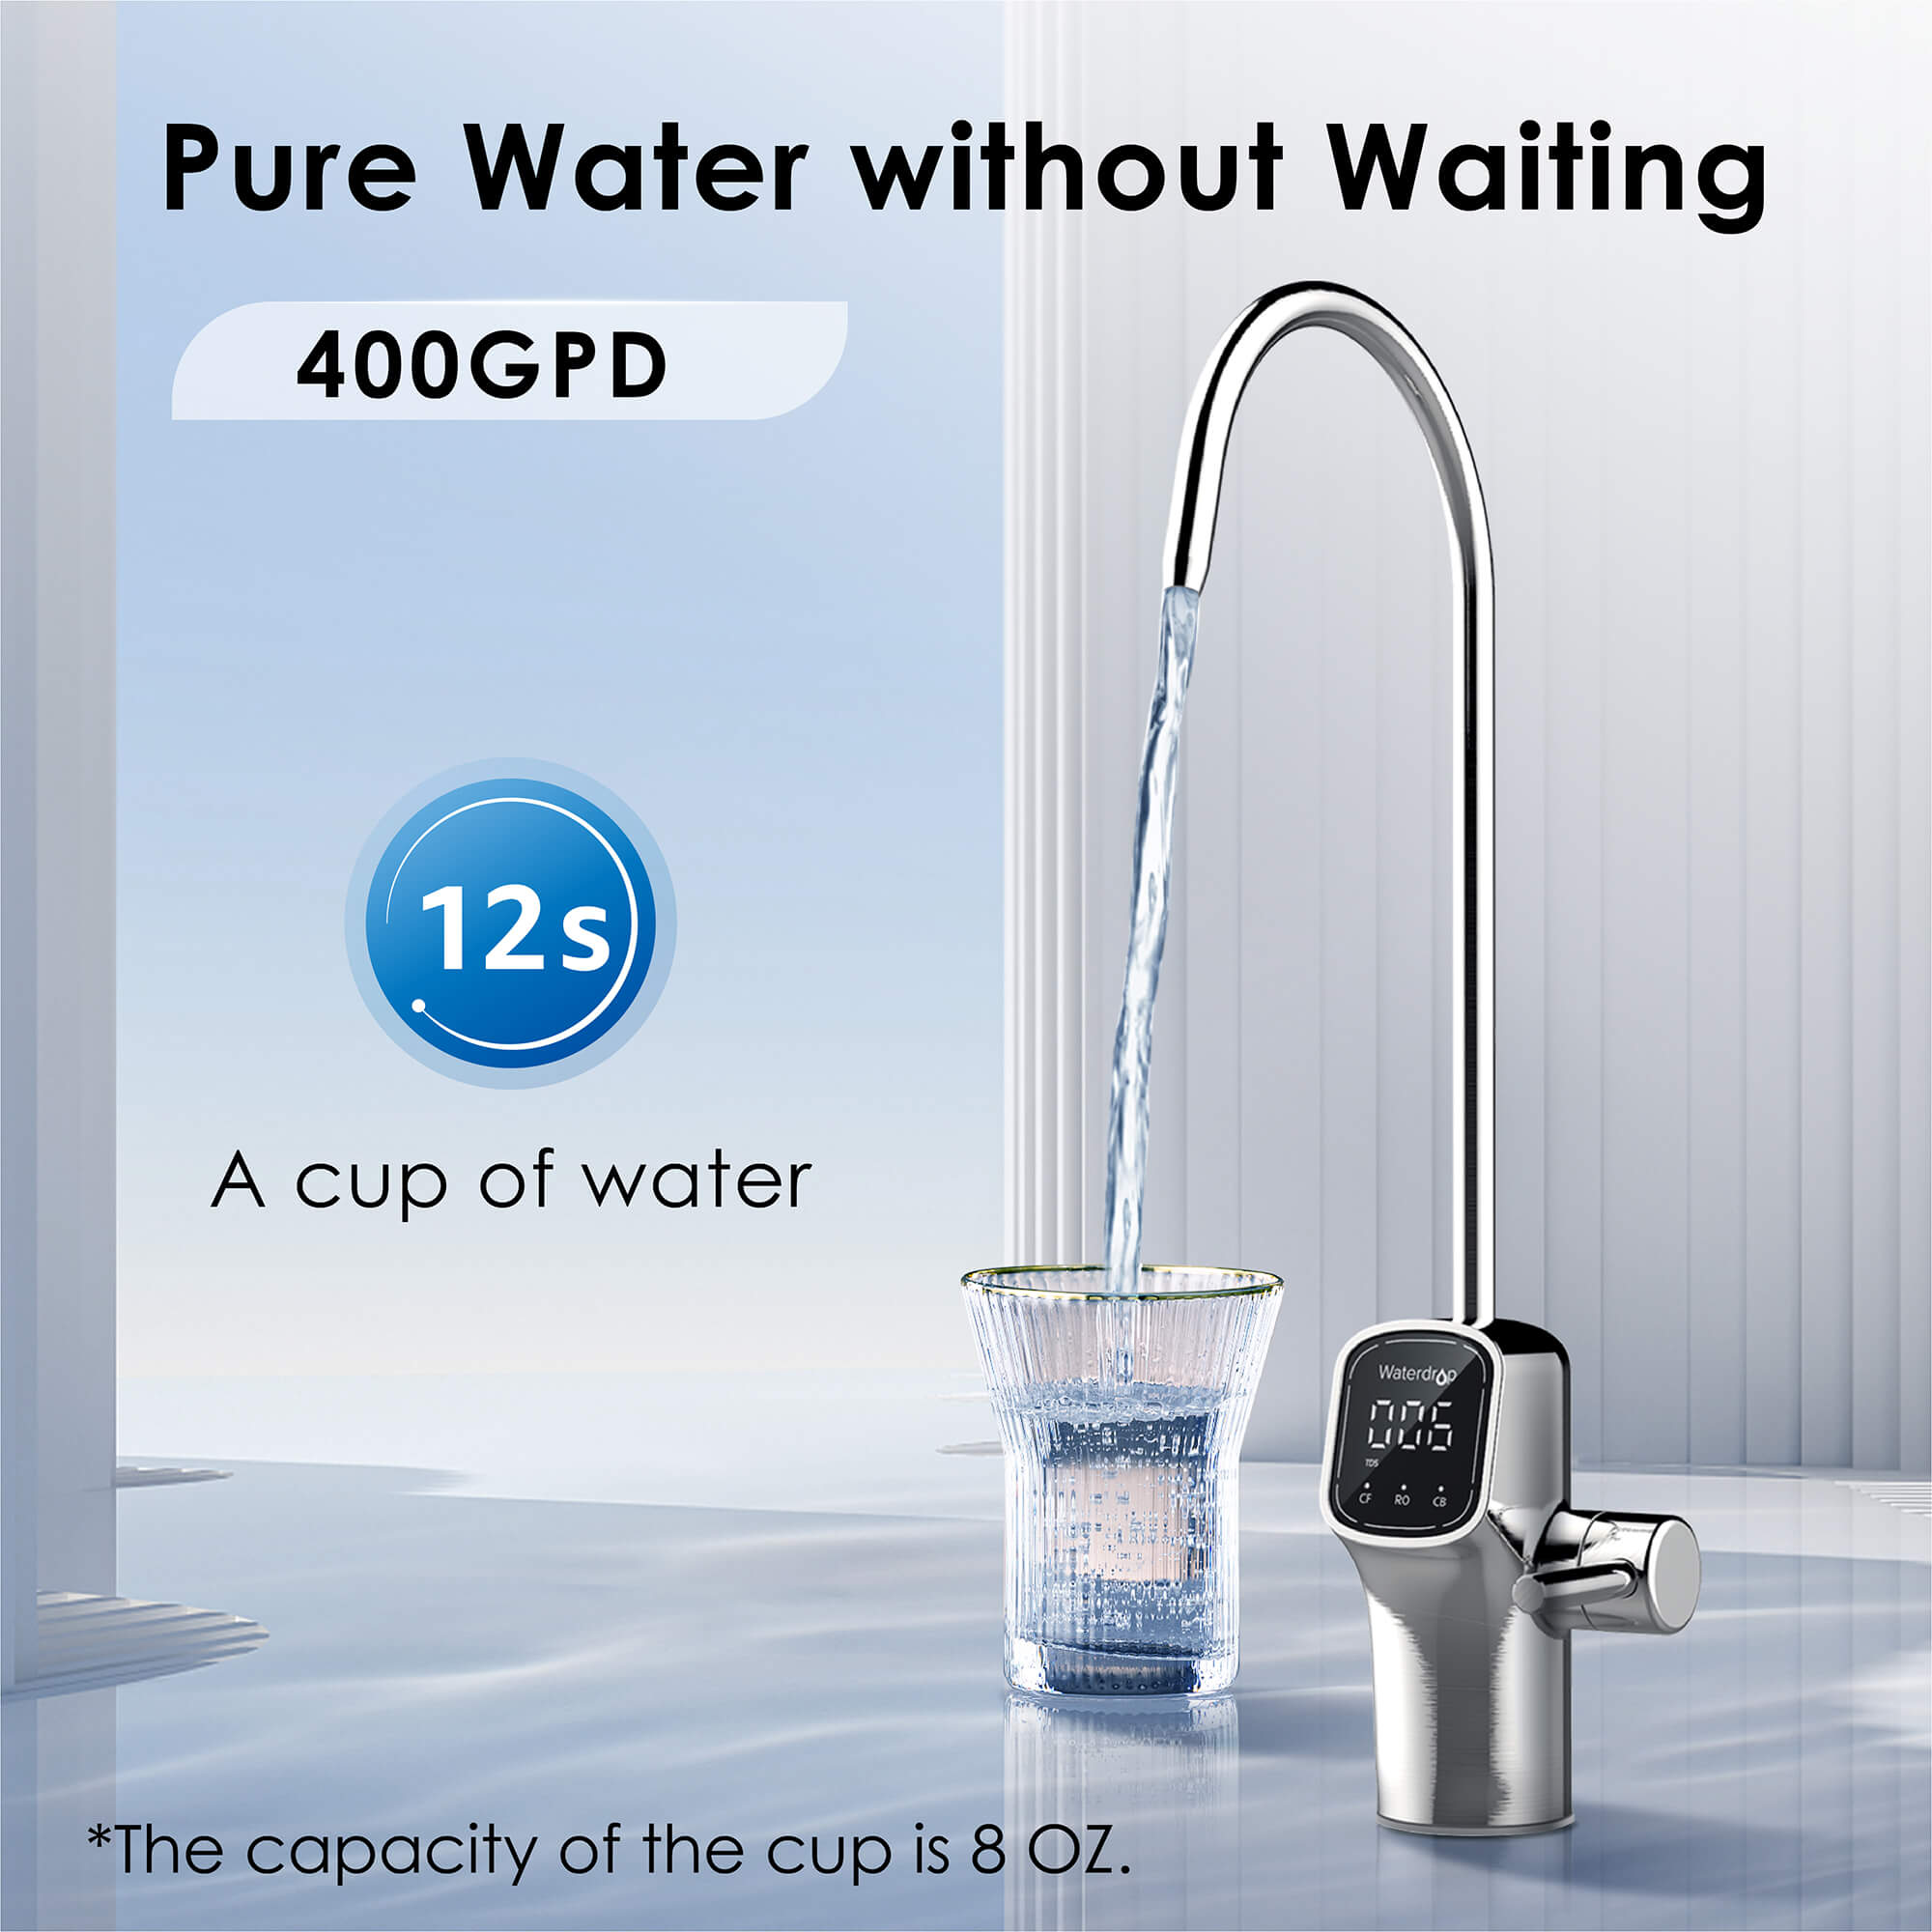 Las mejores ofertas en Paquete Waterdrop 3 número de filtros de agua